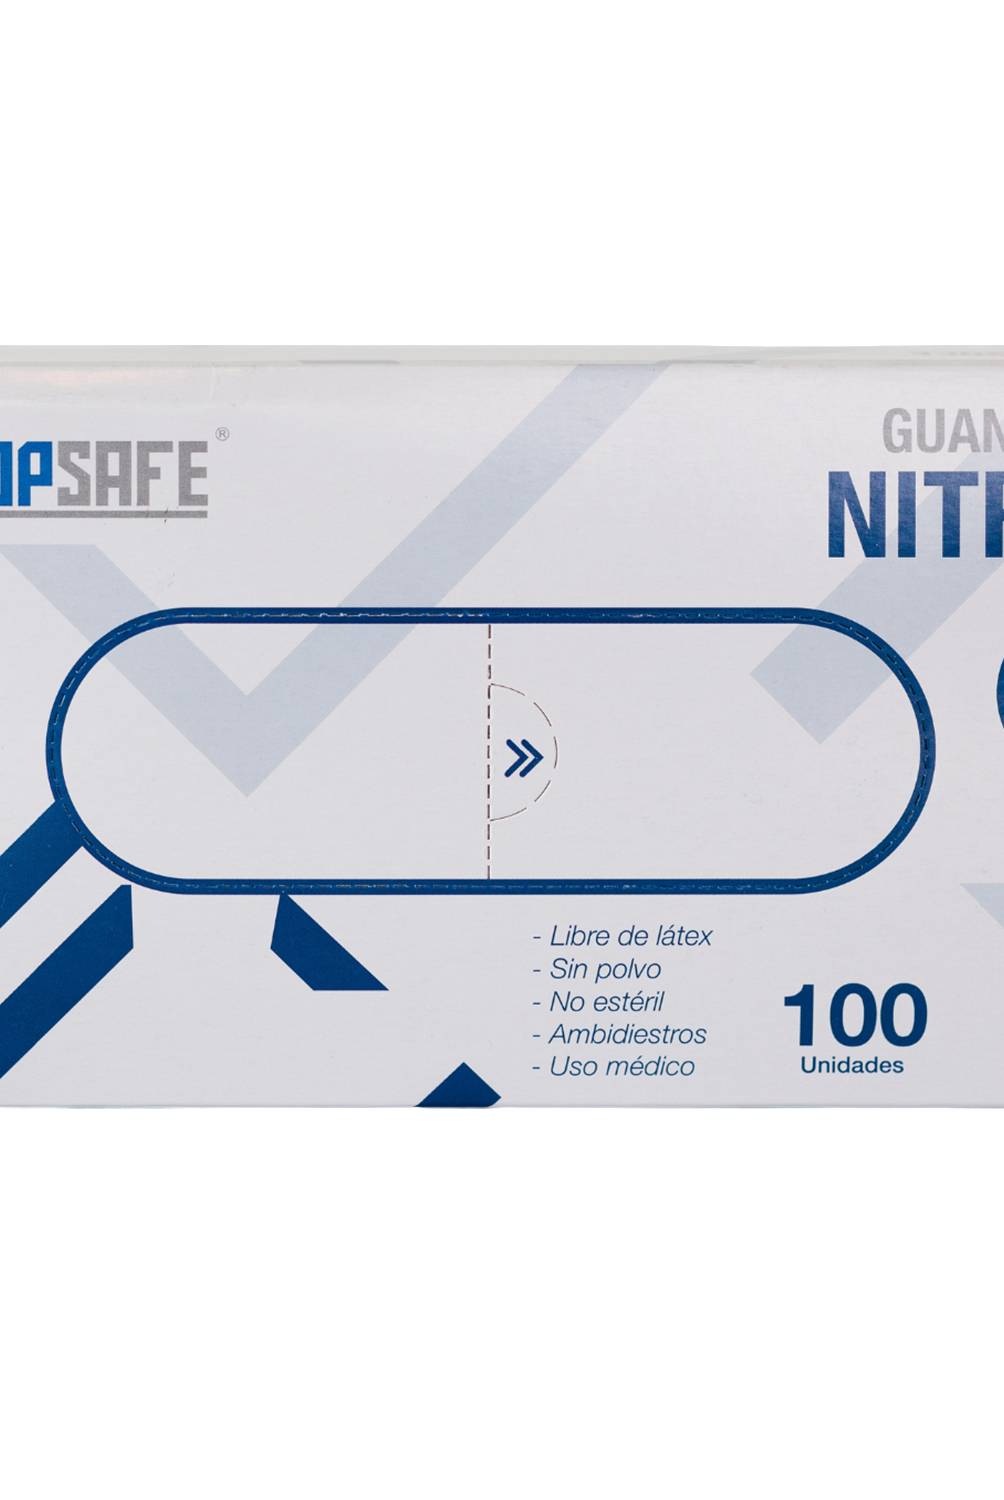 TOPSAFE - Guante desechable de nitrilo talla M caja x 100 unidades